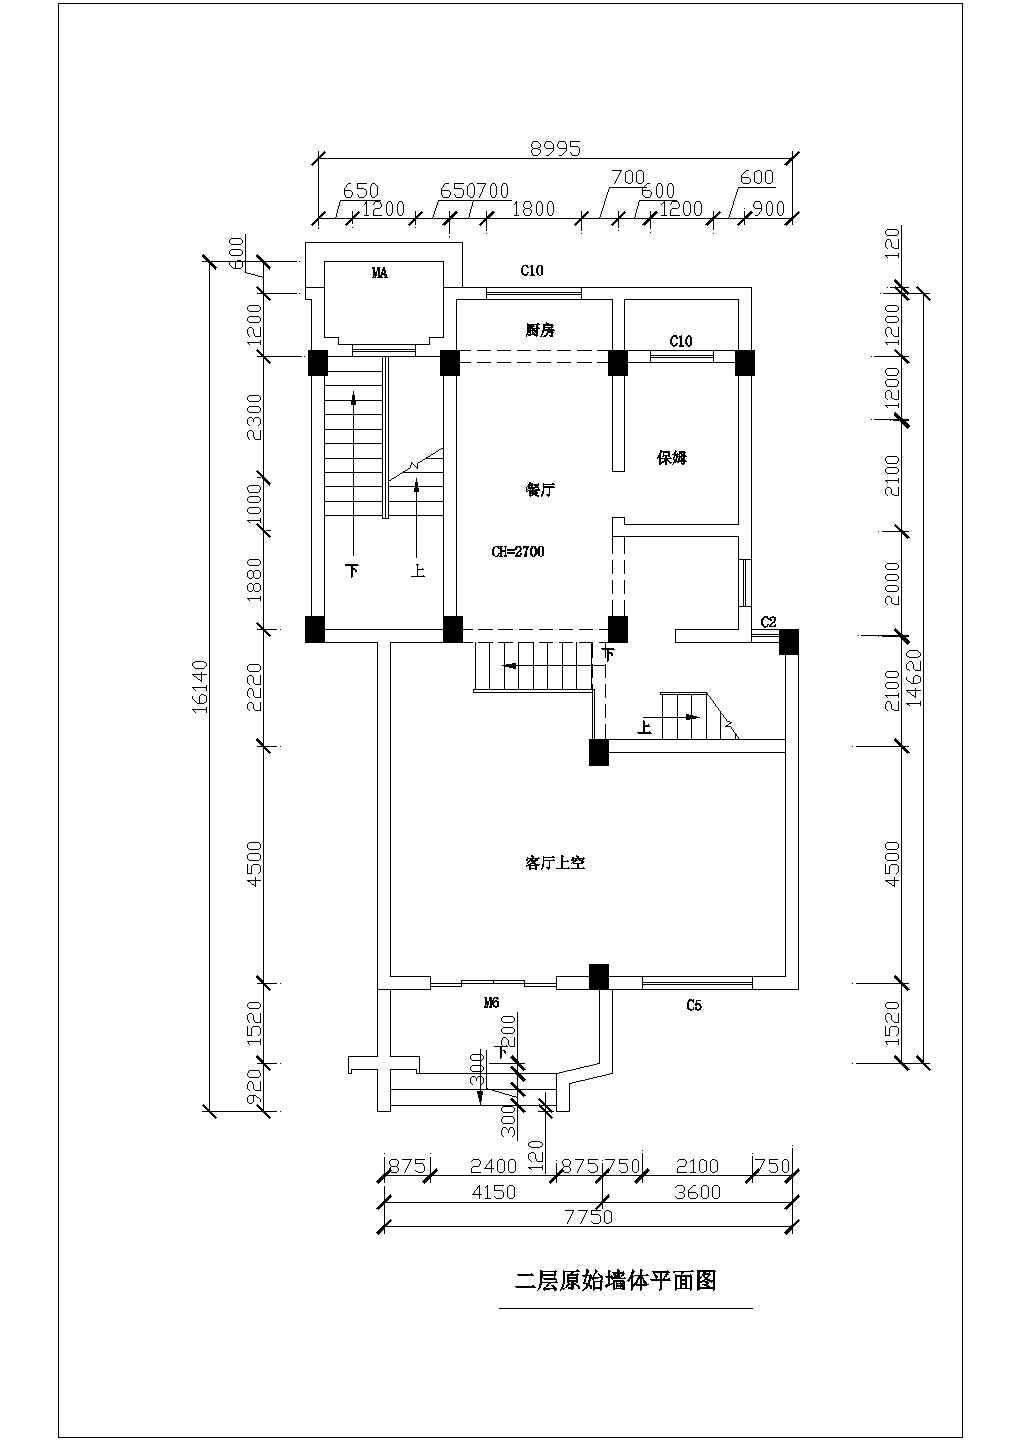 三层欧式别墅全套装修设计方案图